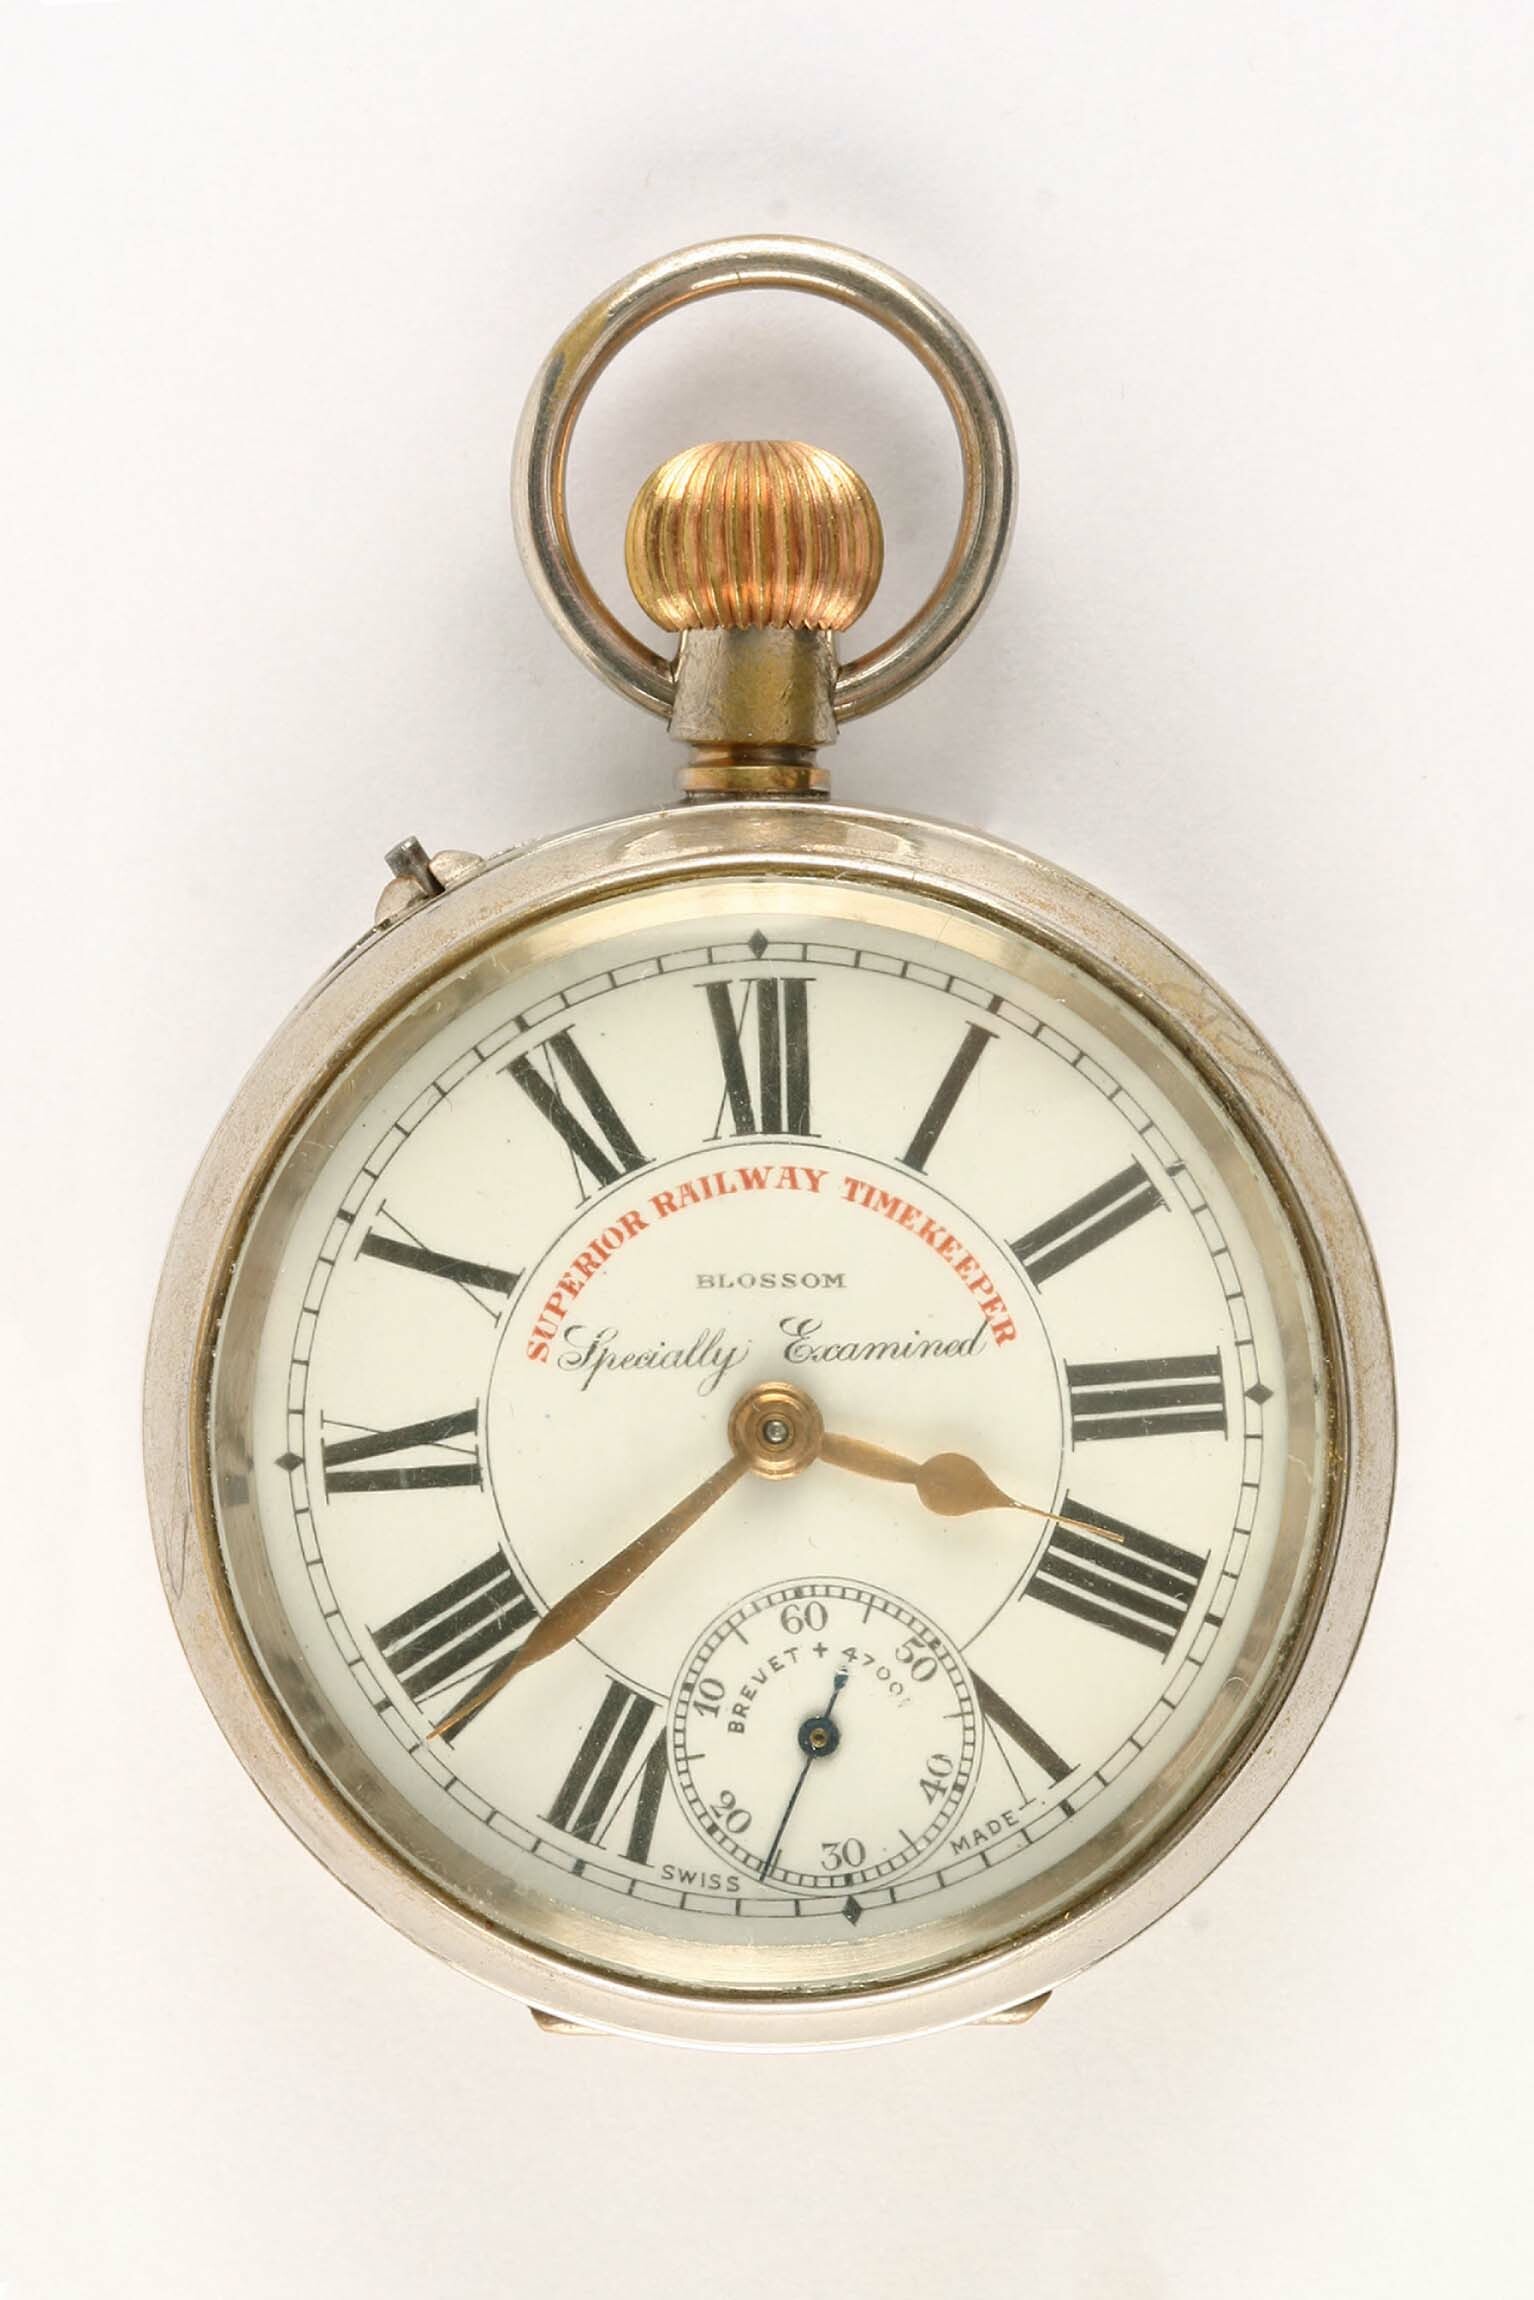 Taschenuhr, E. Kummer, Bettlach (Schweiz), um 1910 (Deutsches Uhrenmuseum CC BY-SA)